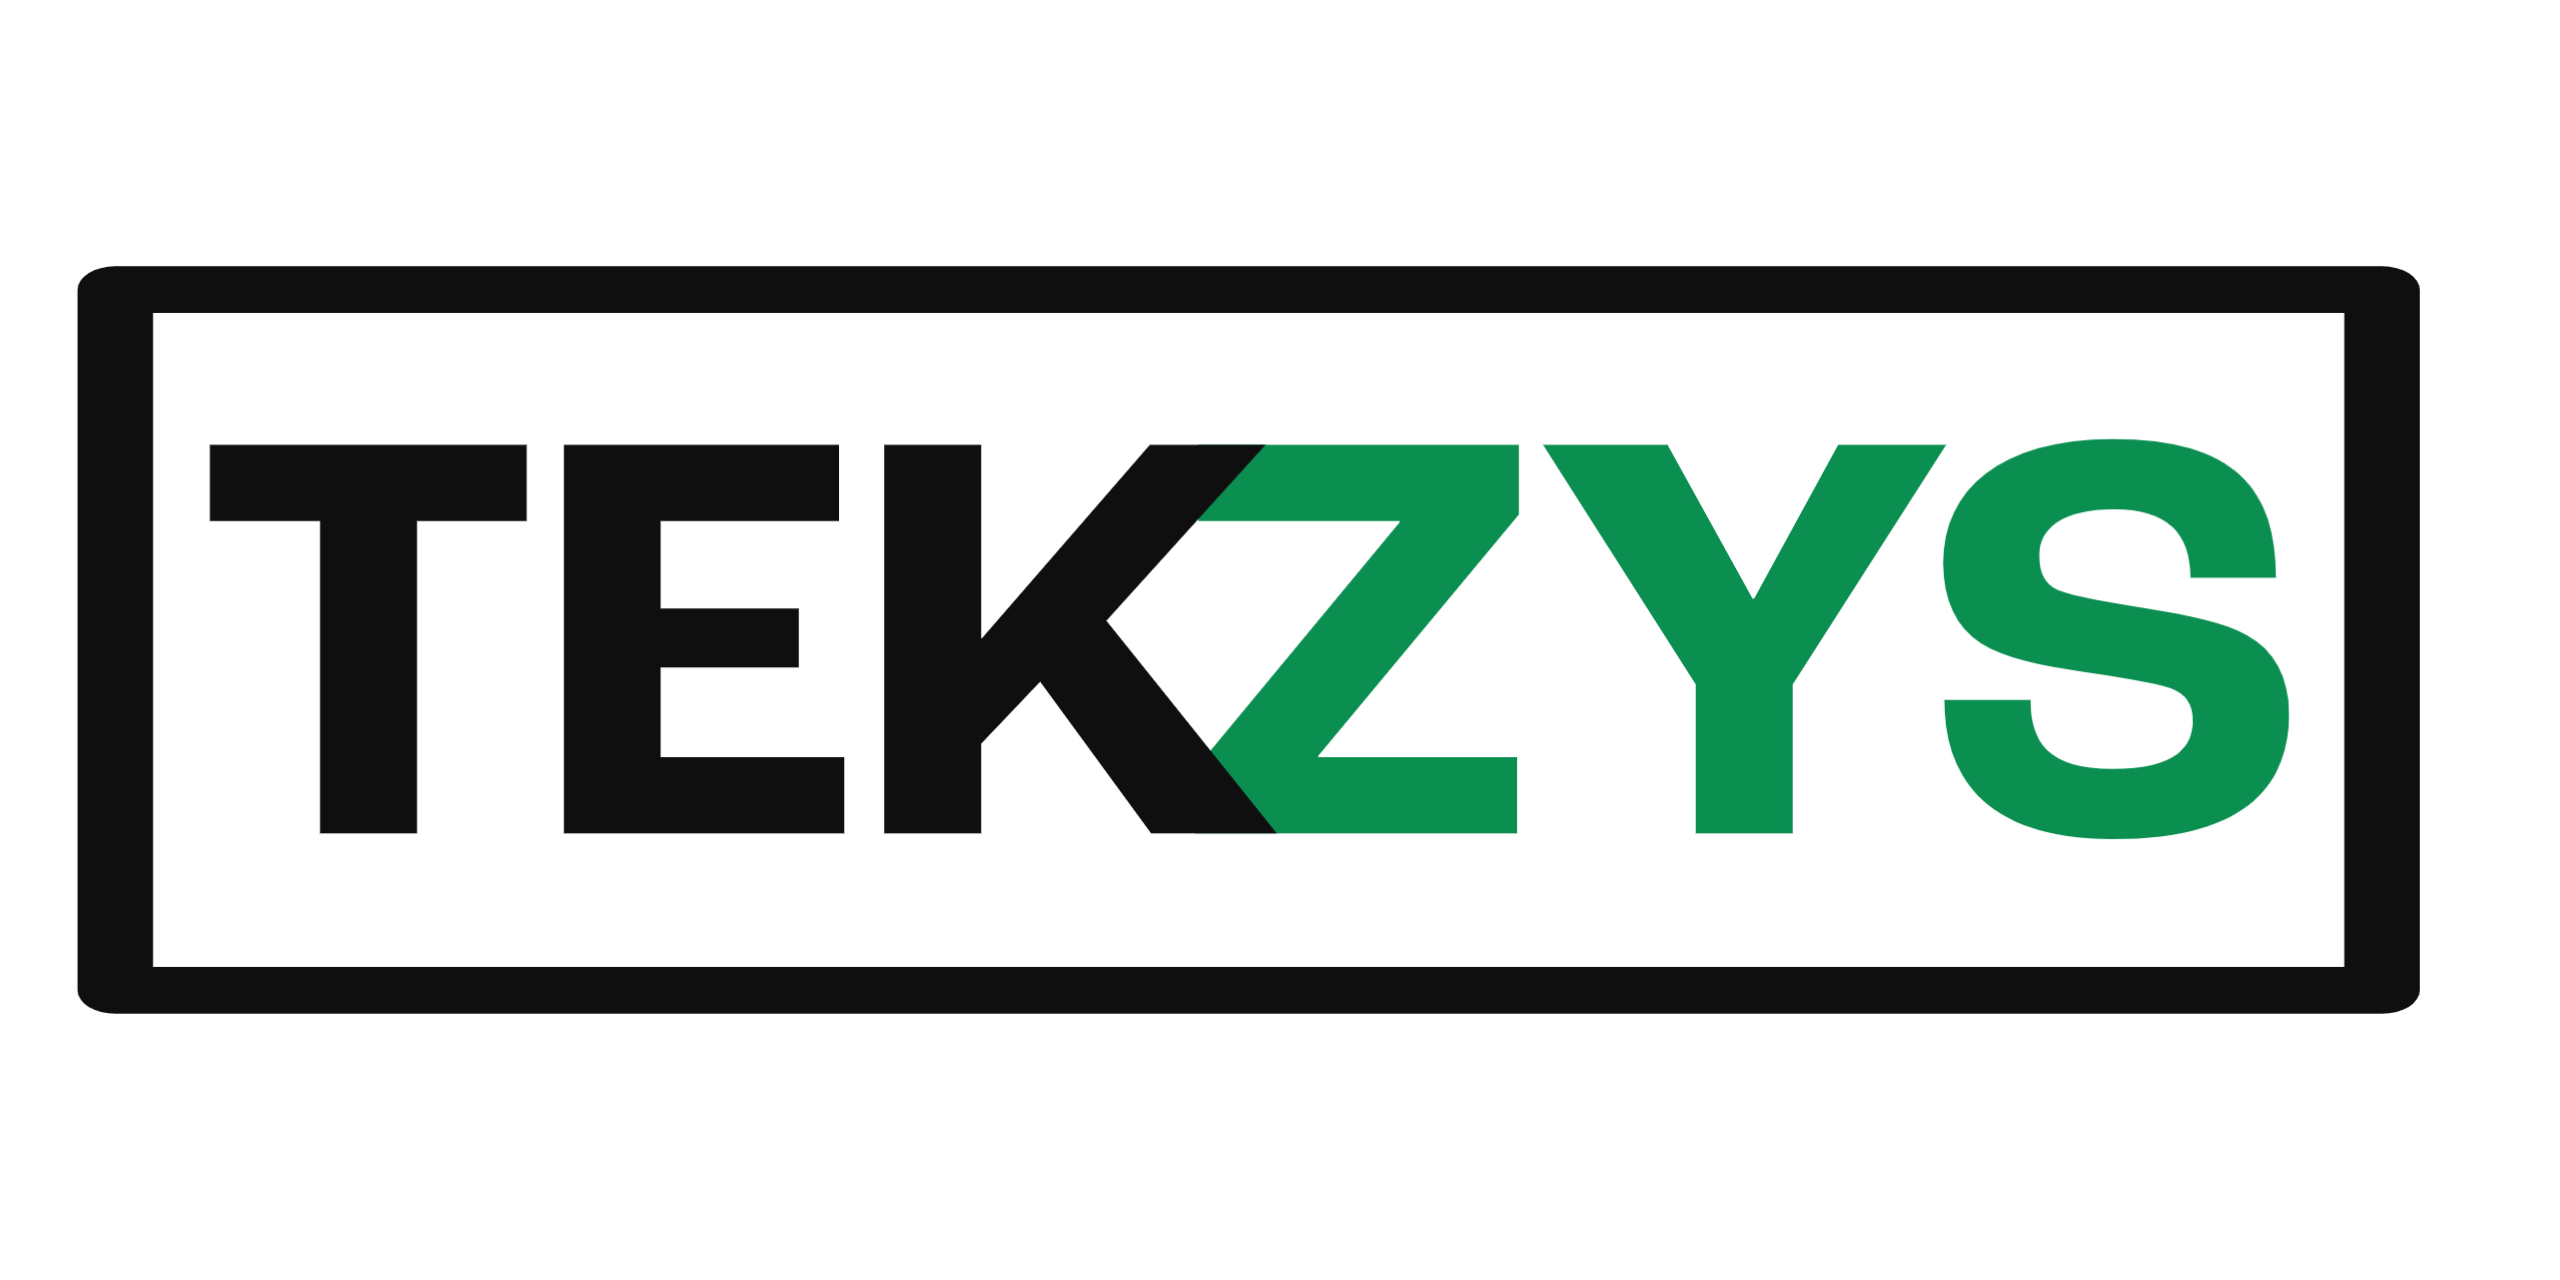 TEKZYS Logo